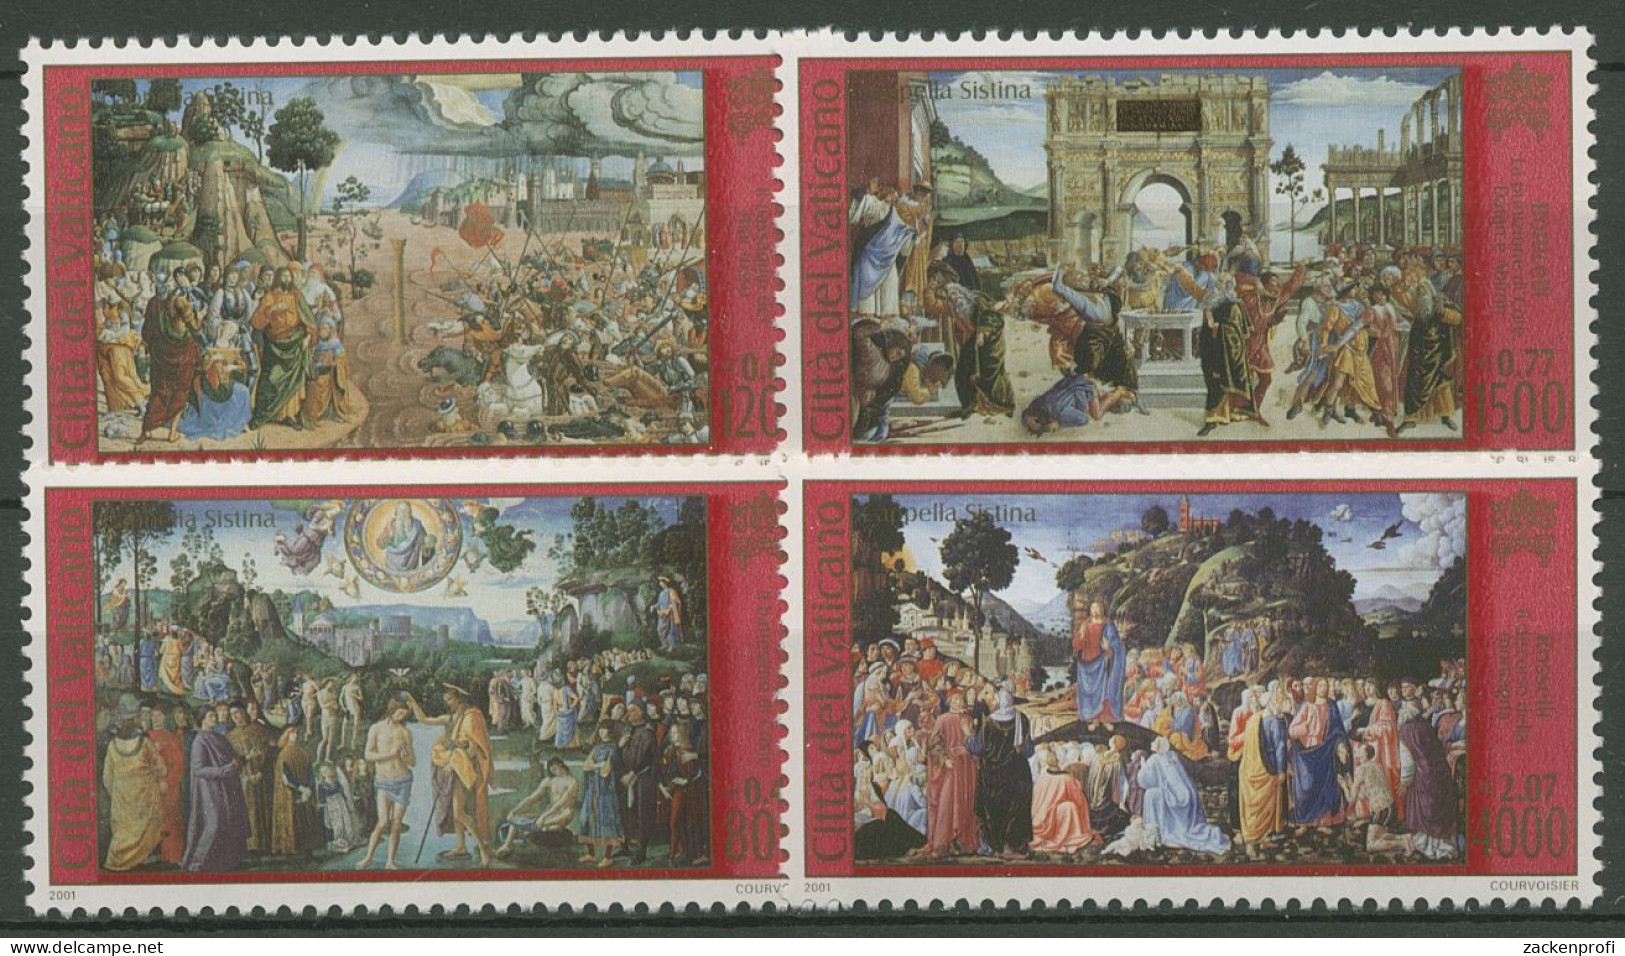 Vatikan 2001 Restaurierung Der Sixtinischen Kapelle 1362/65 Postfrisch - Unused Stamps